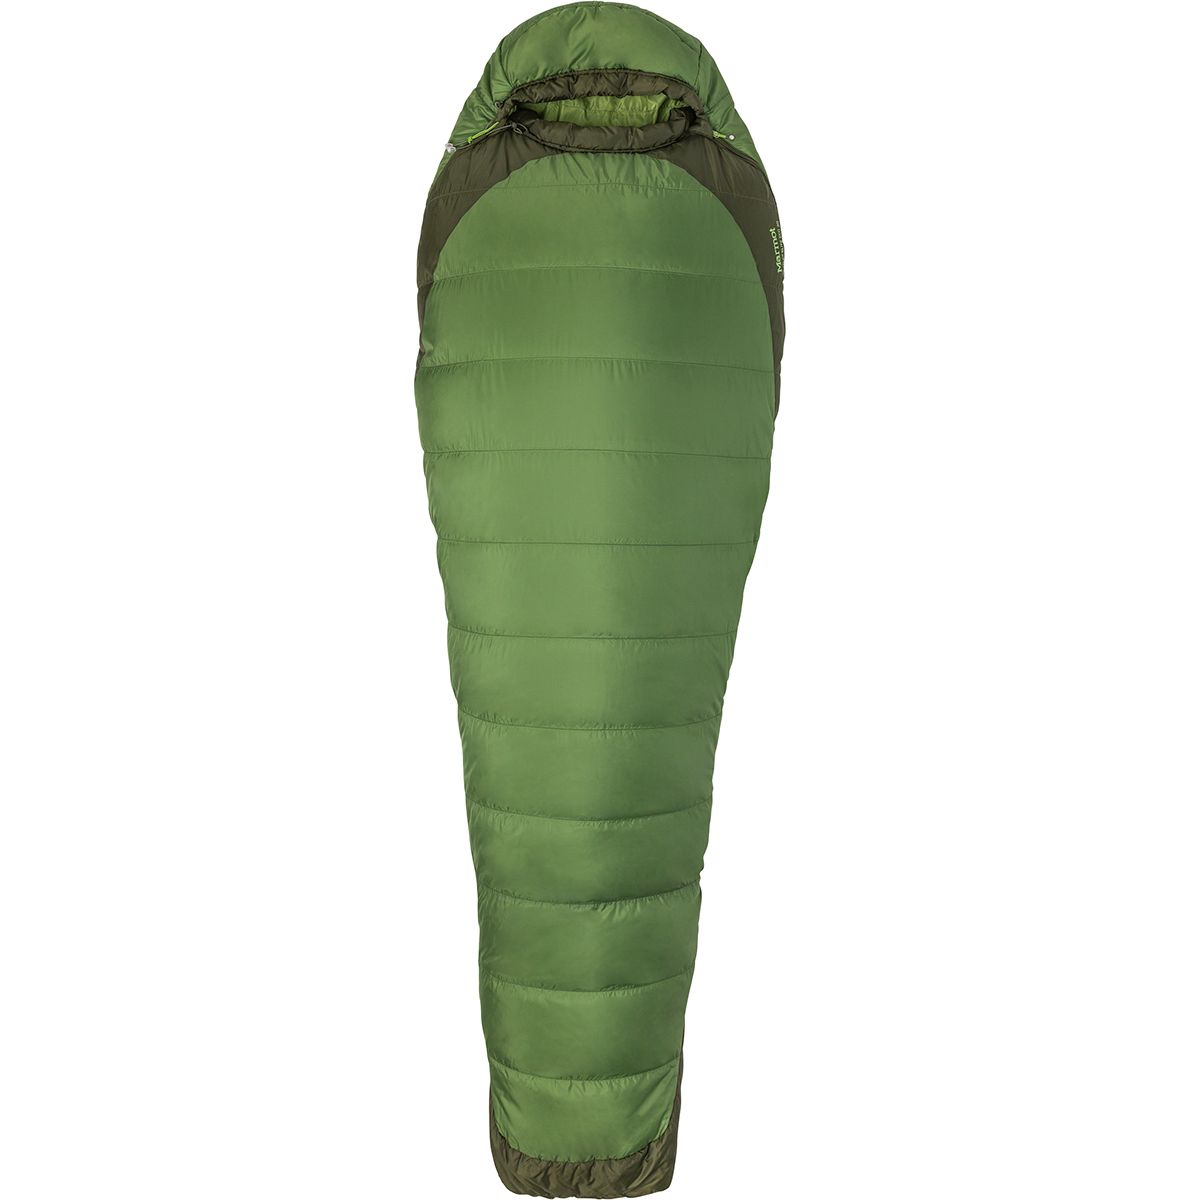 마모트 Marmot Trestles Elite Eco 30 Sleeping Bag: 30F Synthetic - Hike & Camp